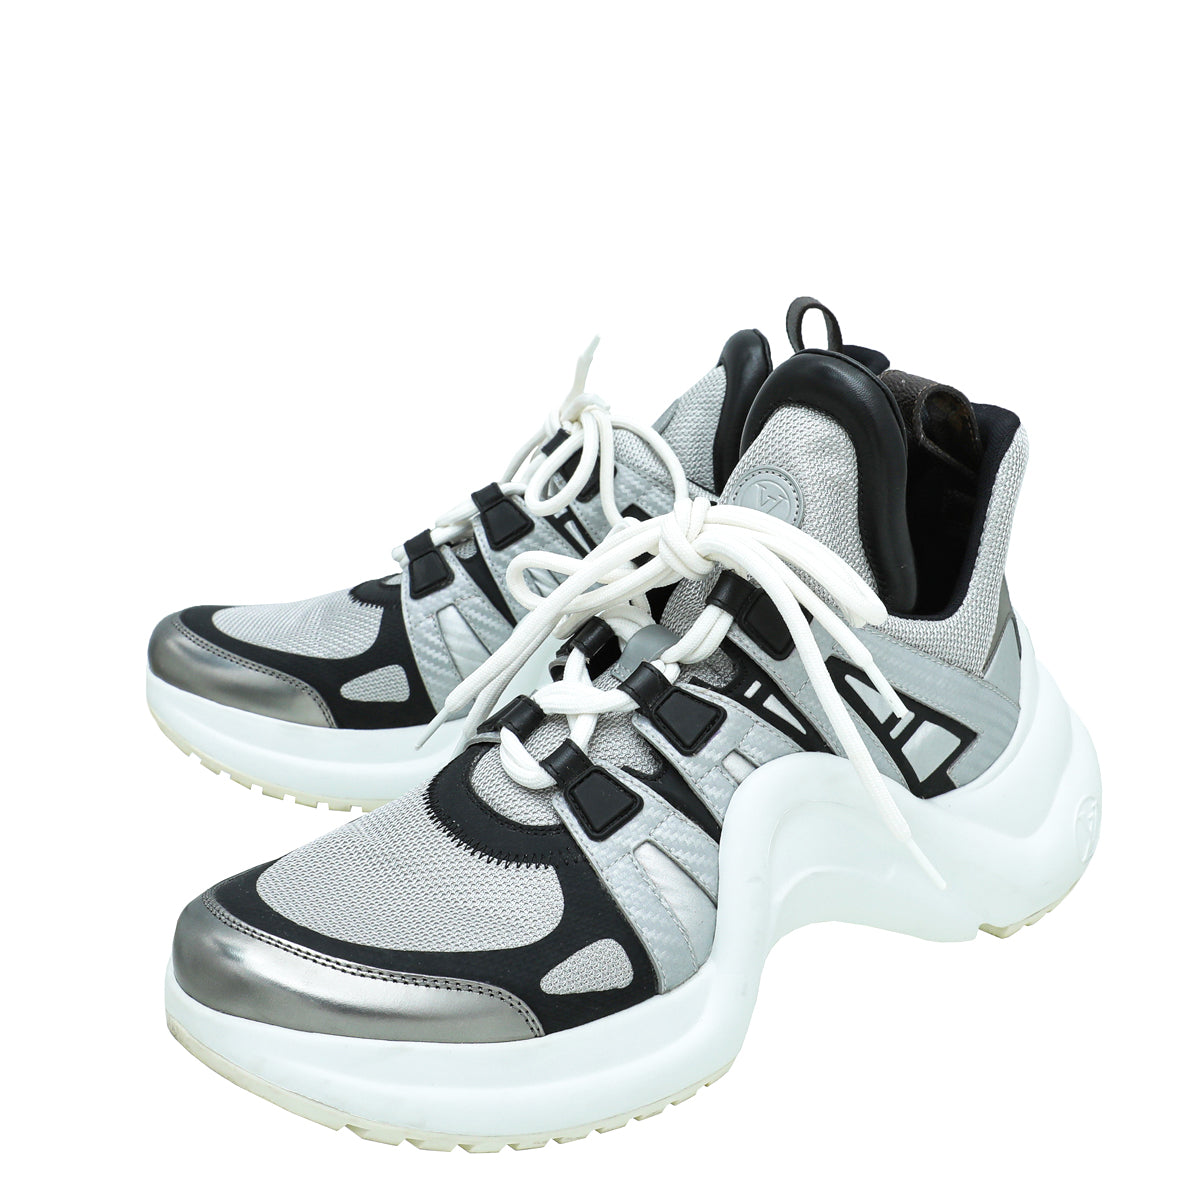 Retail Louis Vuitton Archlight Shoe For QC Purposes : r/DesignerReps